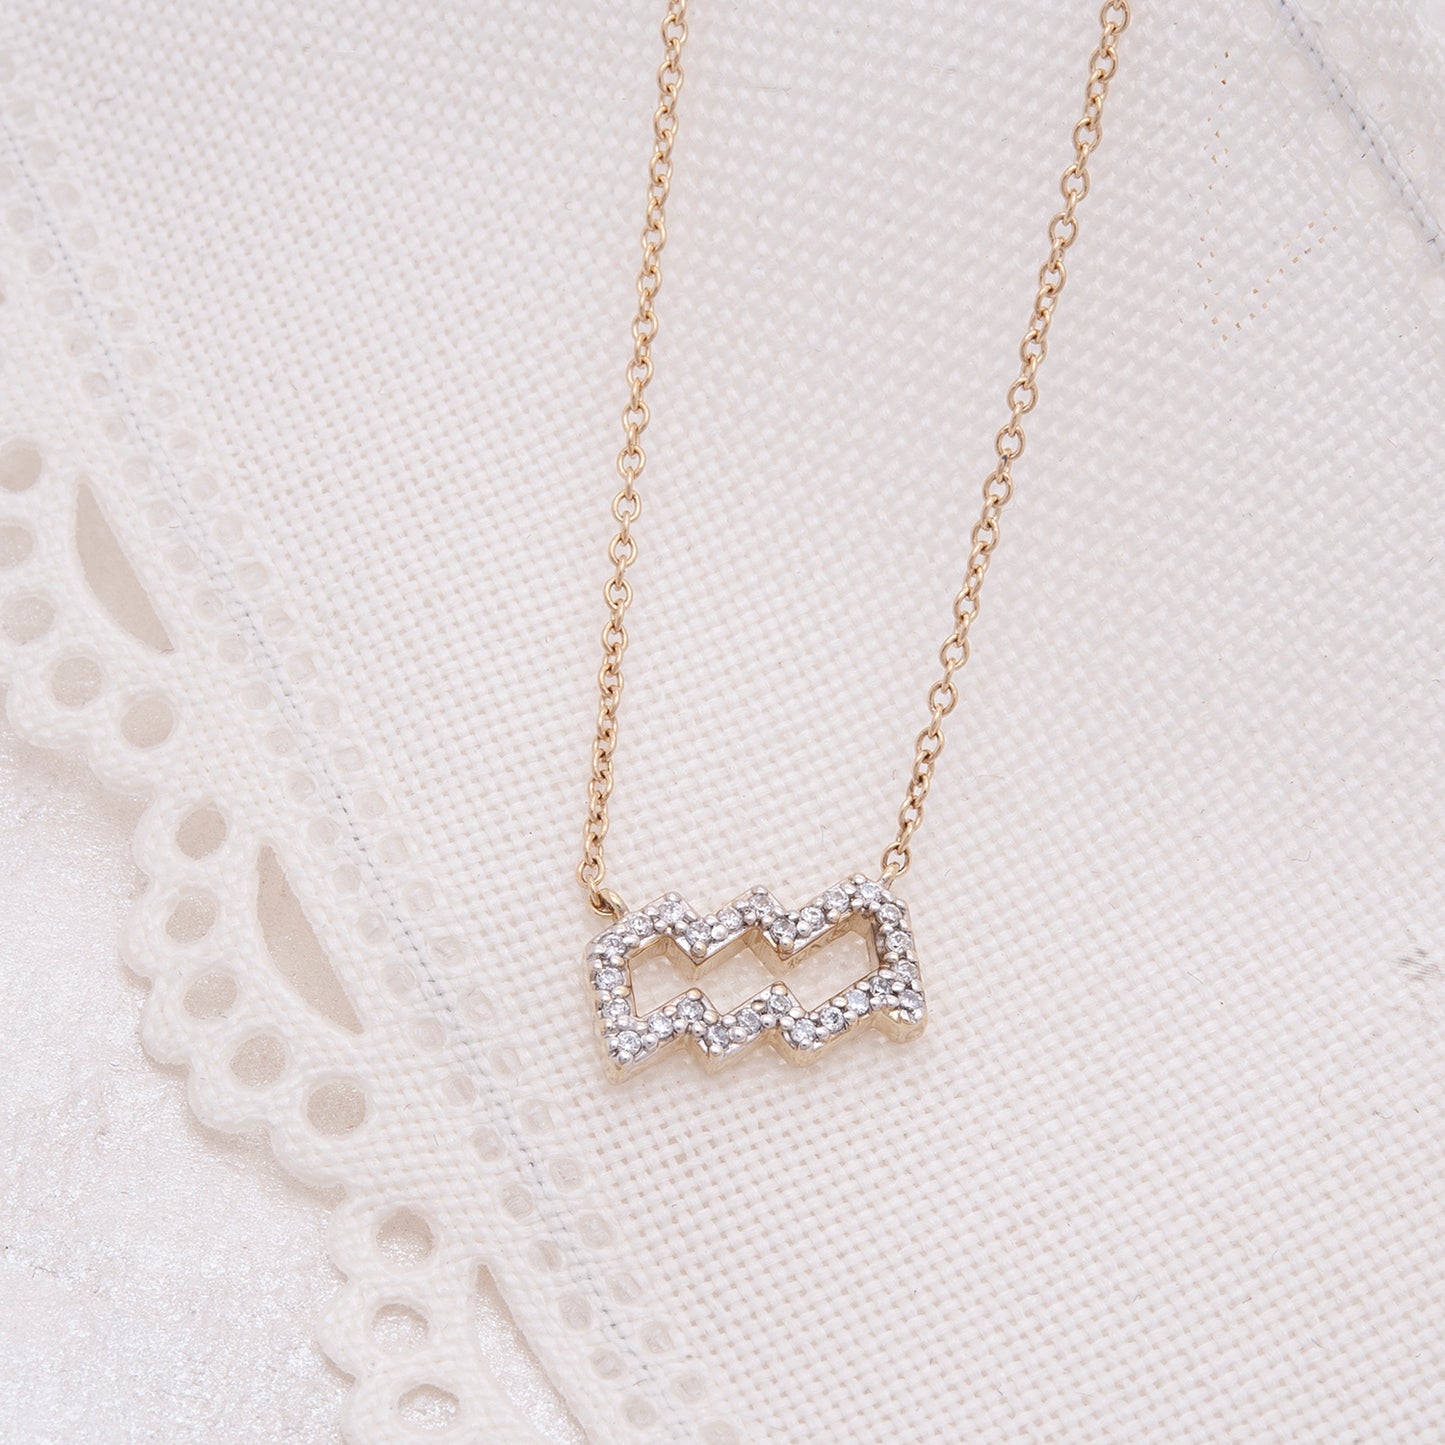 Zodiac Diamond Necklace with chain